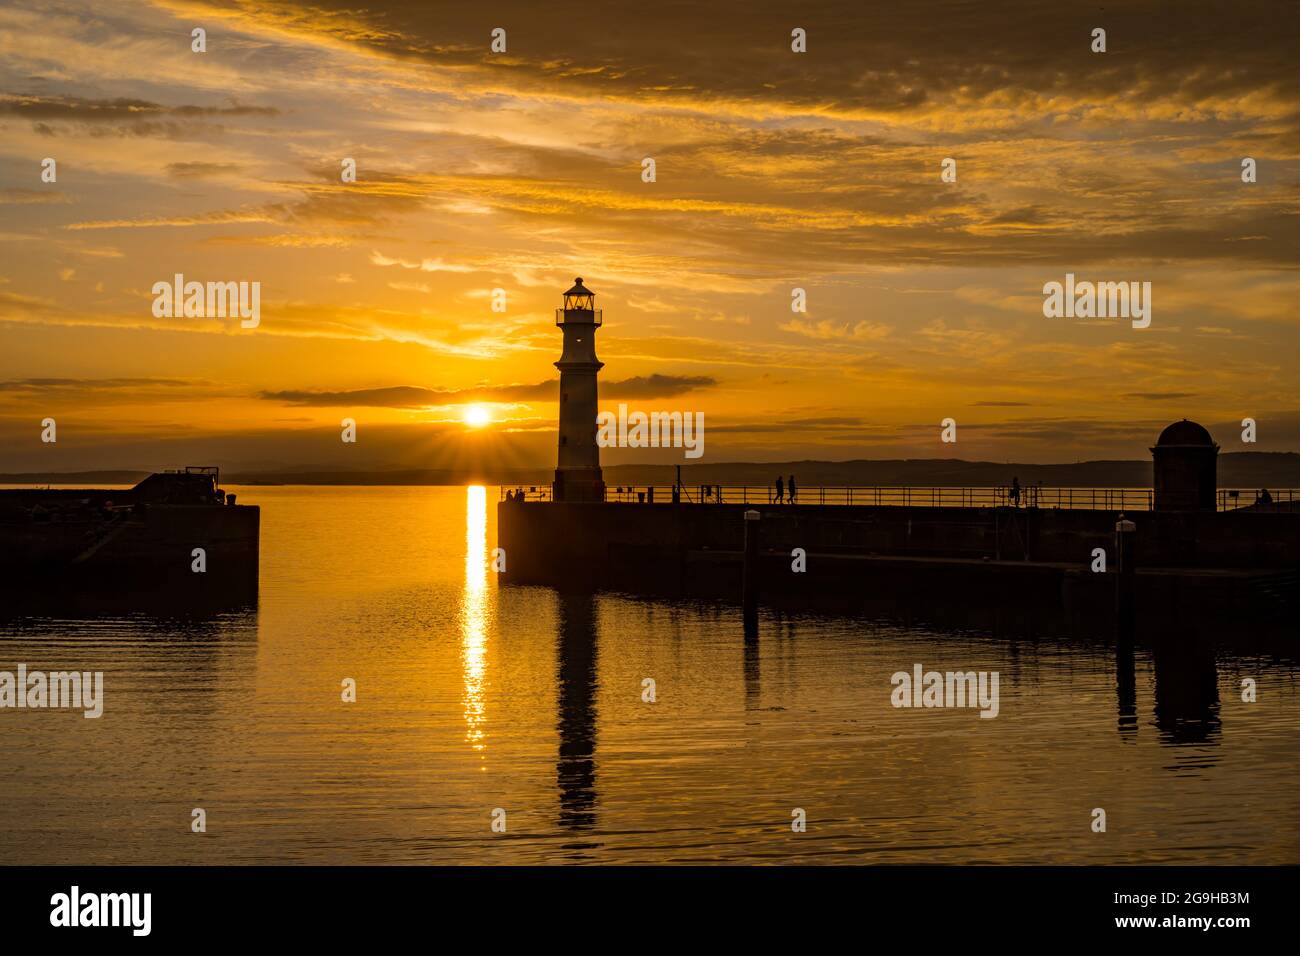 Il faro del porto di Newhaven si trova in un colorato cielo arancione al tramonto, Edimburgo, Scozia, Regno Unito Foto Stock